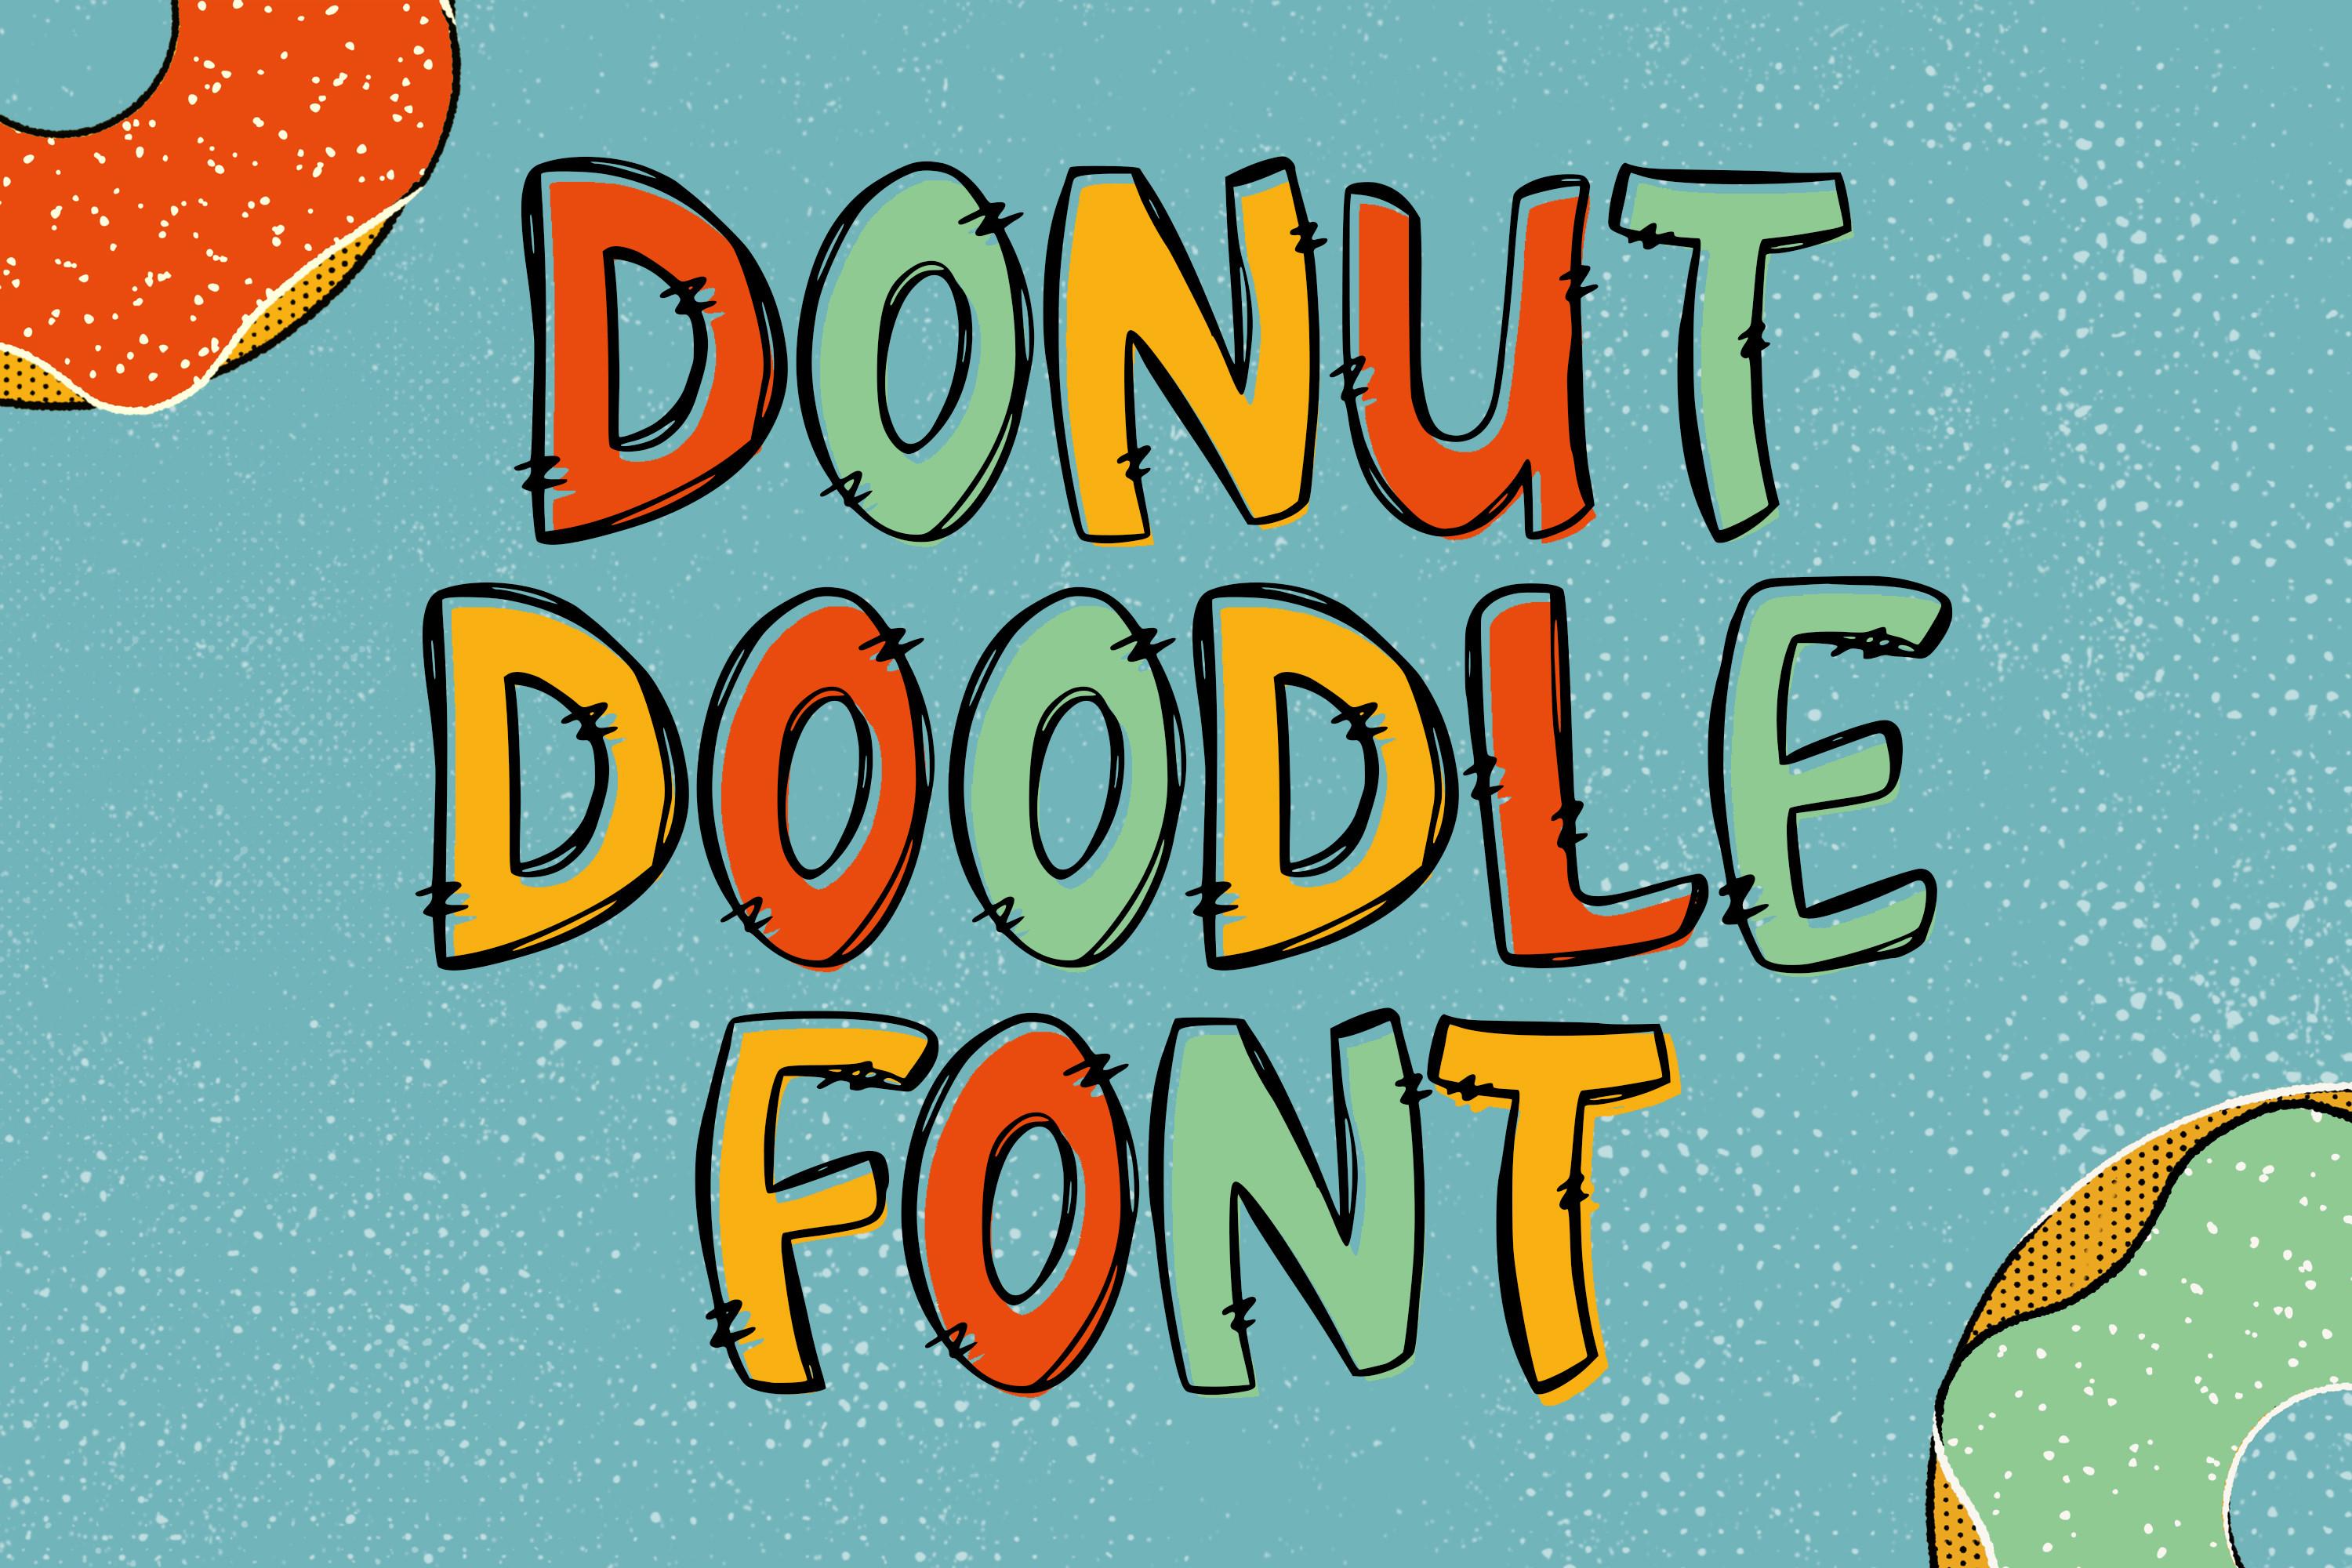 Donut Doodle Font